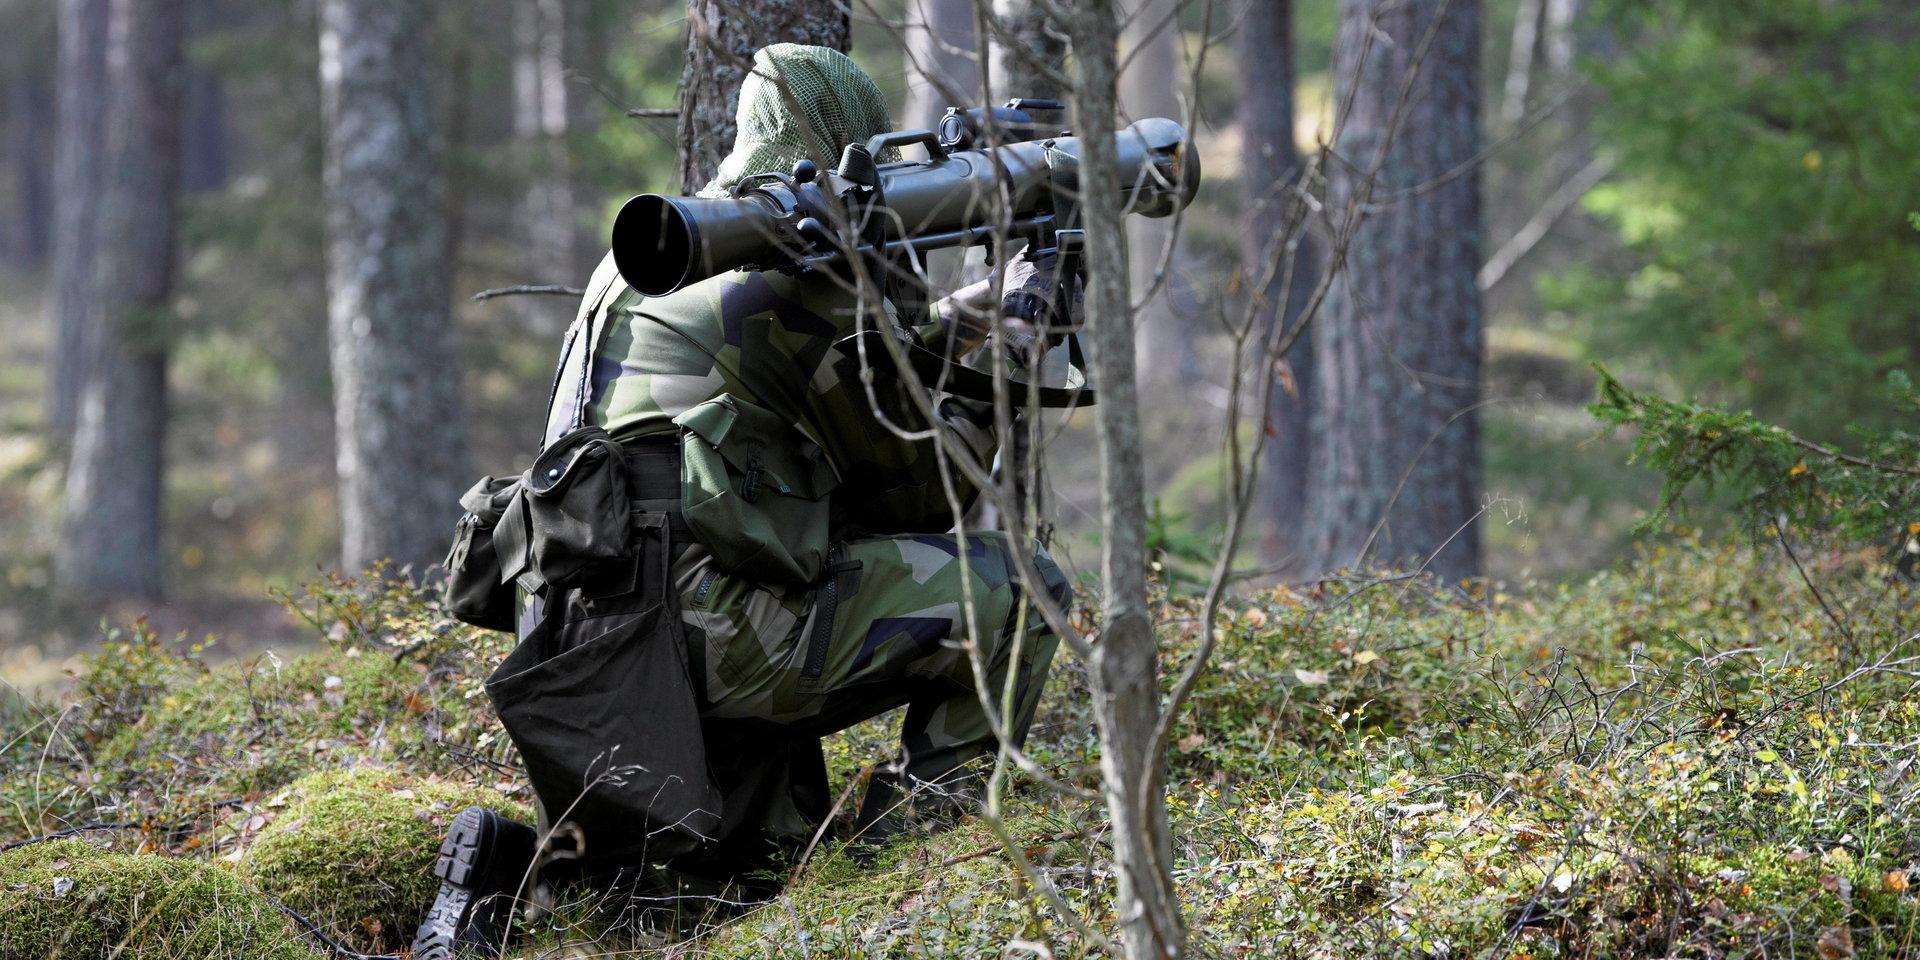 Det är så dags nu att titta till Sveriges försvar och våra försäkringar mot krig och elände, skriver ”Rotorparn”.